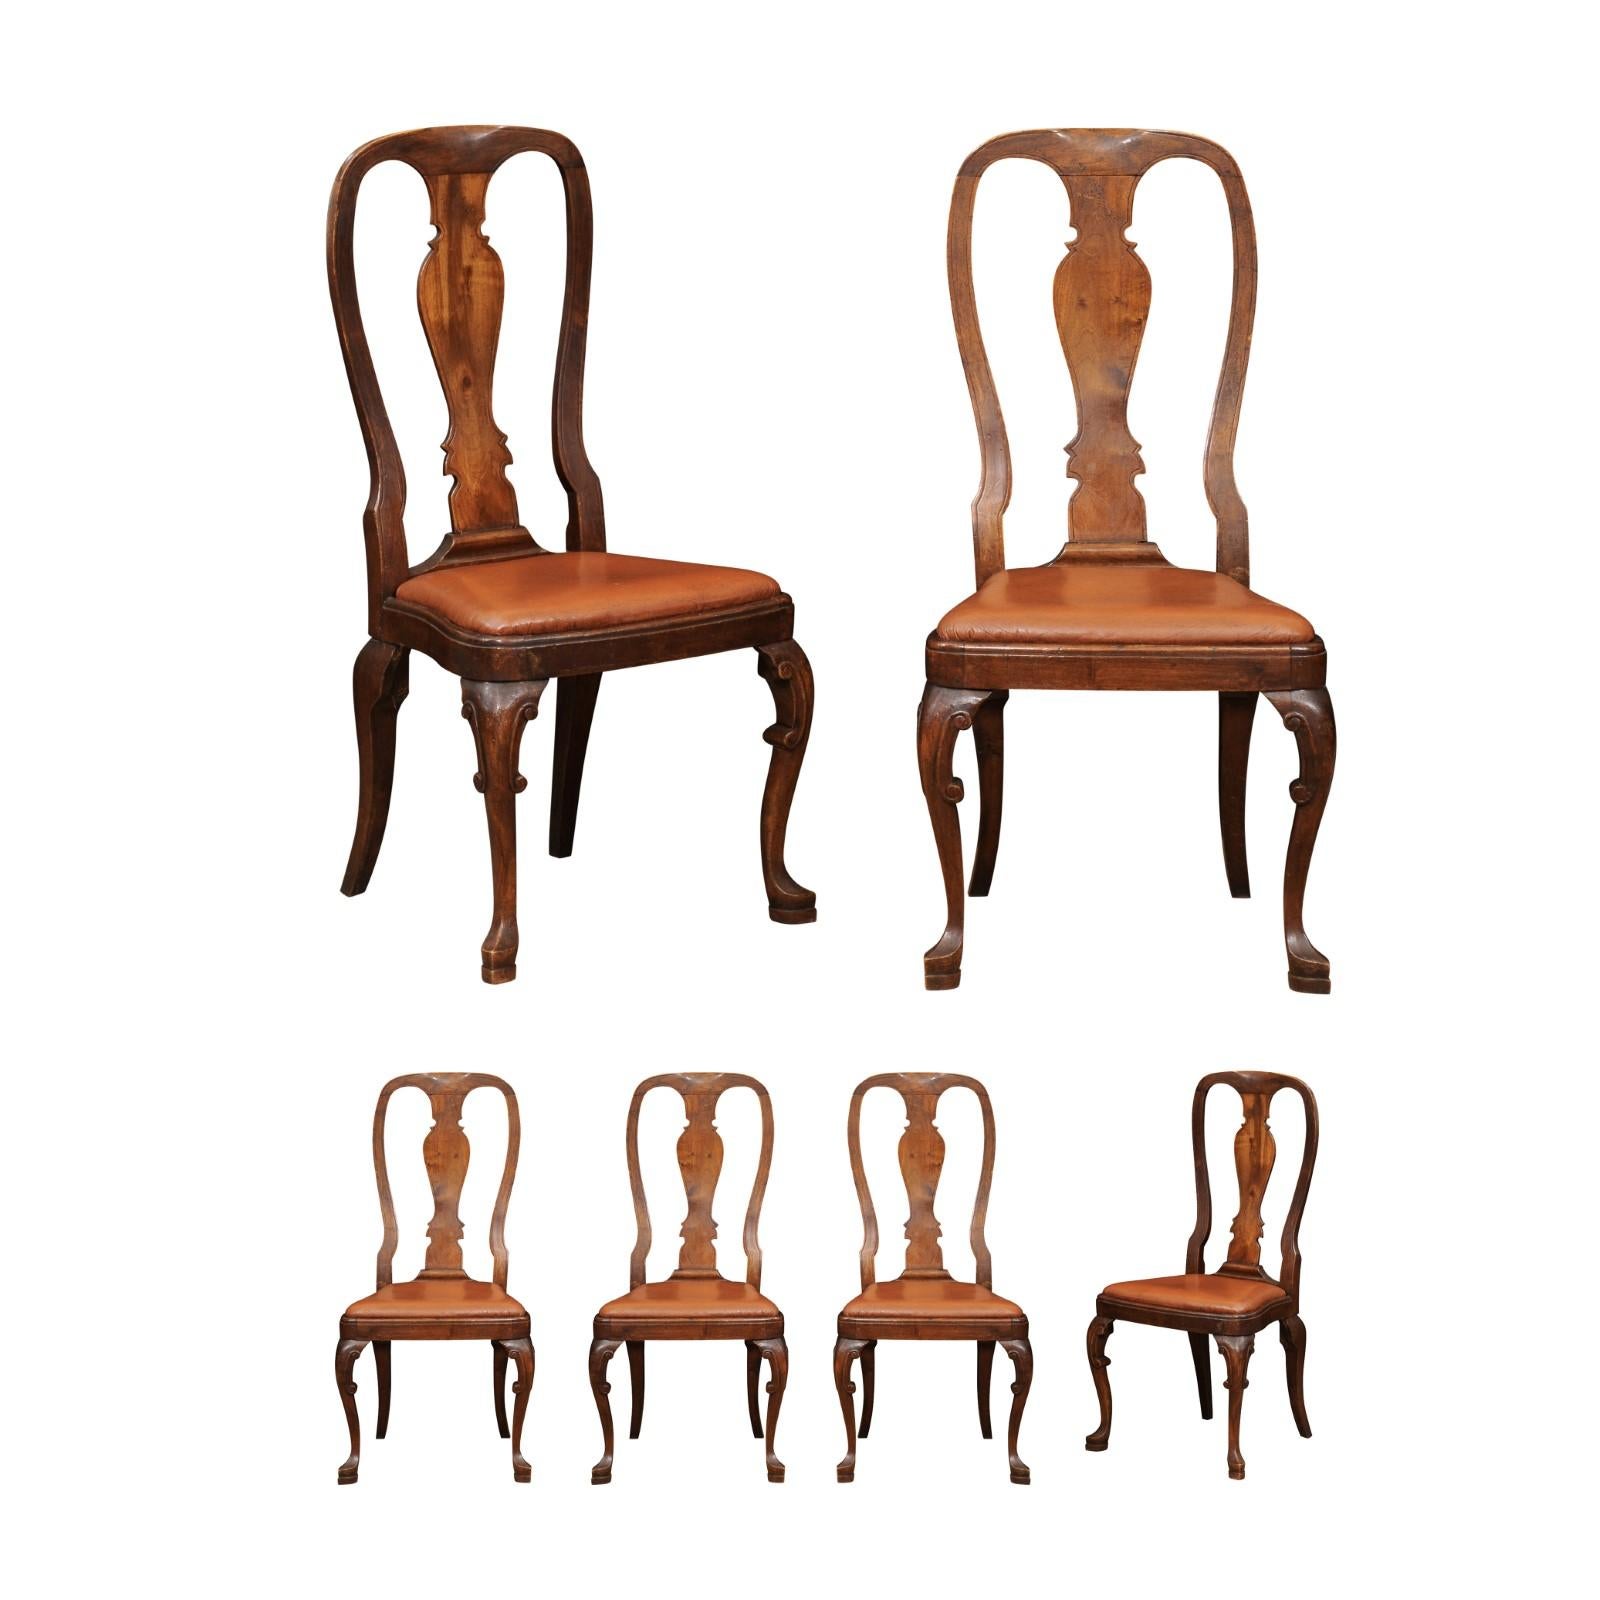 Ensemble de 6 chaises de salle à manger en noyer de style rococo italien avec pieds cabrioles et sièges en cuir, 19ème siècle. PRIX PAR PAIRE.